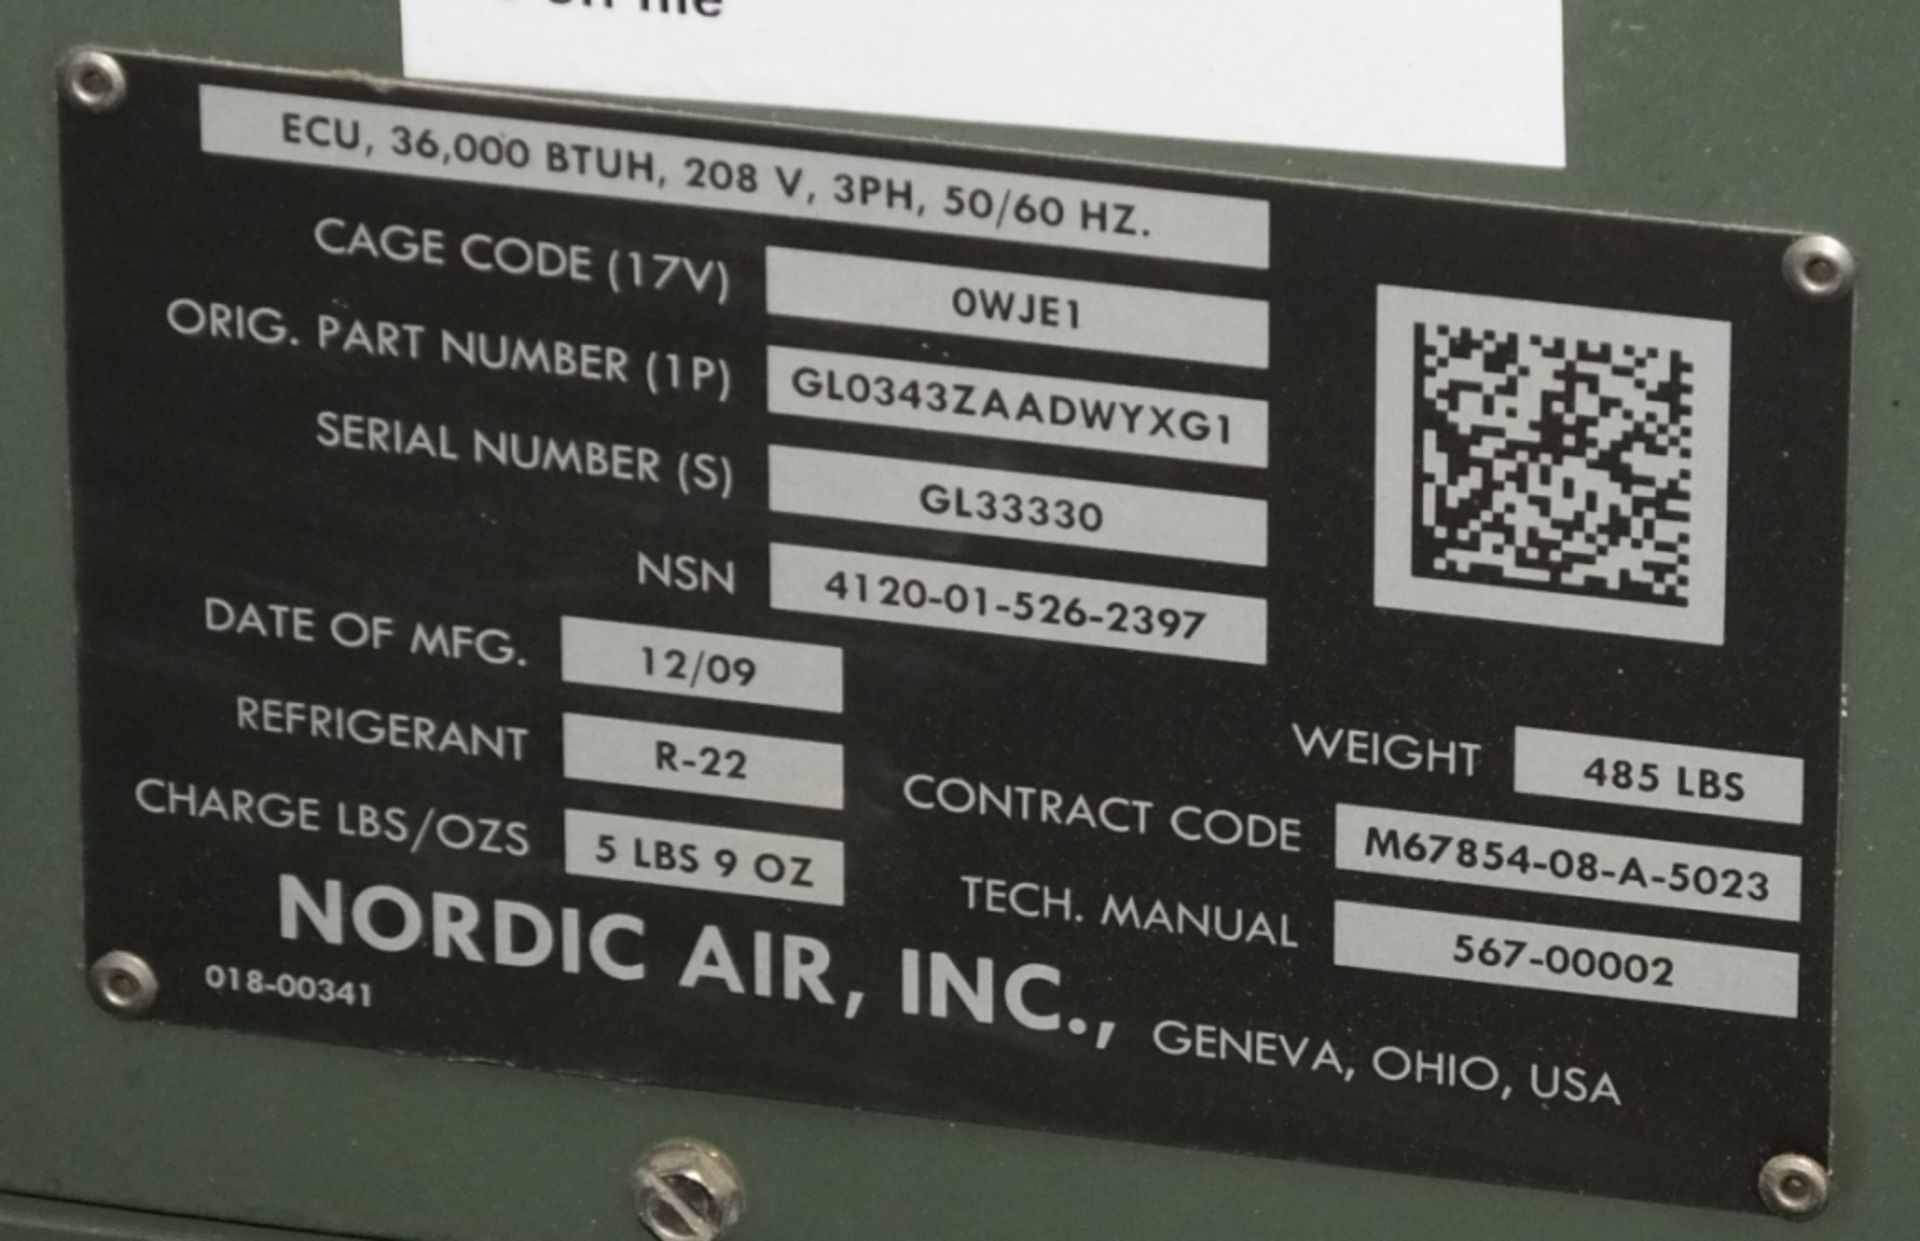 Nordic Air Inc. AIr Conditioner - ECU 36,000 BTU - 208V - 3PH - 50/60hz - Image 2 of 5